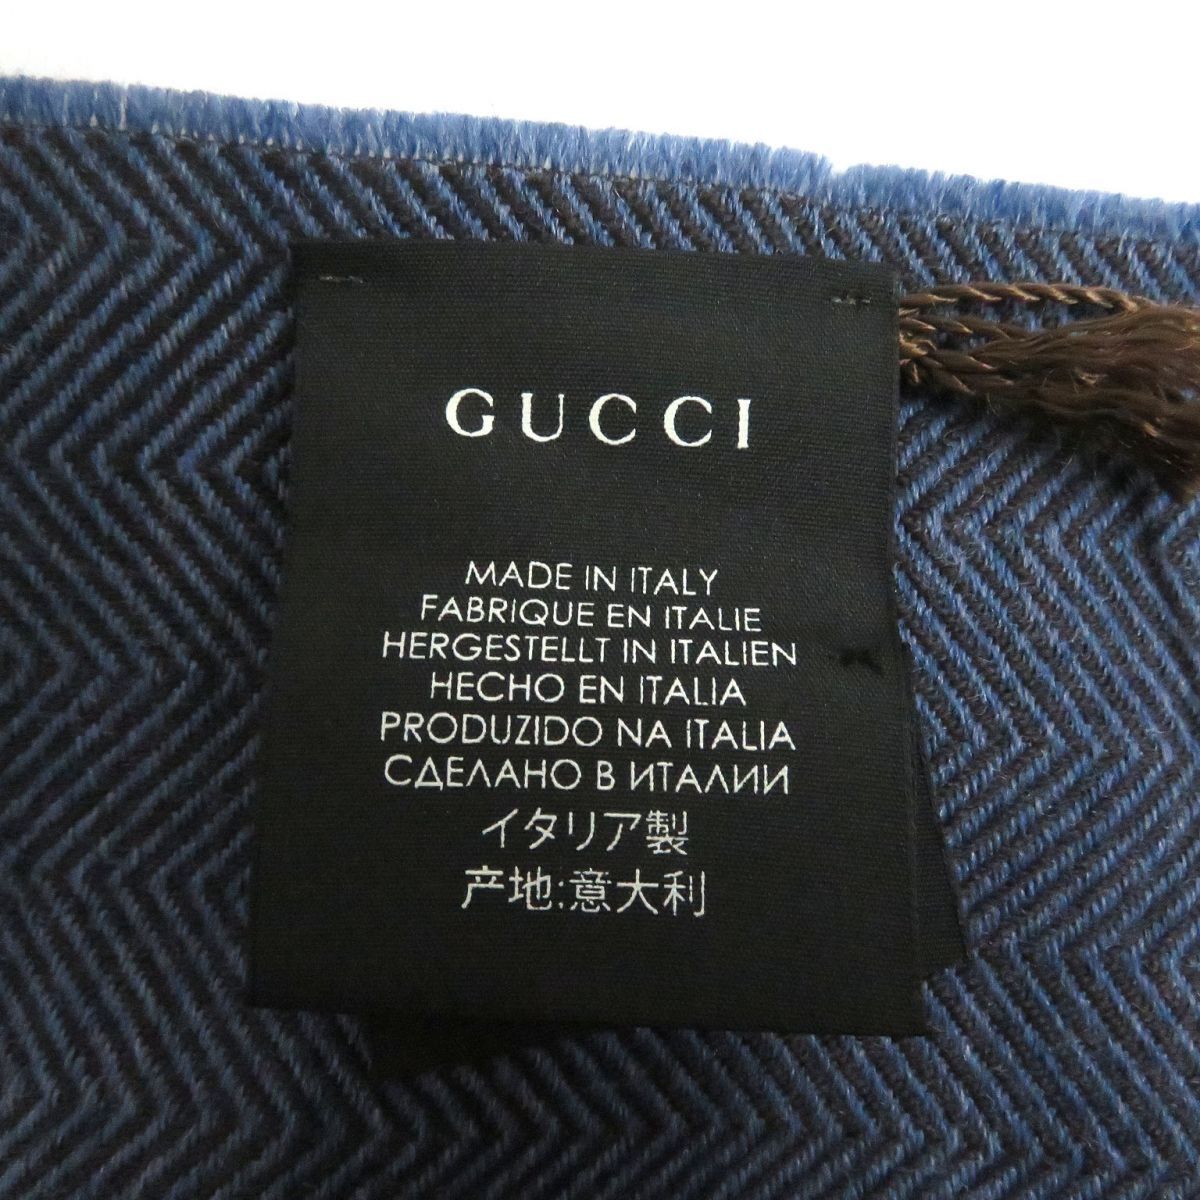  не использовался товар *GUCCI/ Gucci 344993k rest Logo "в елочку" рисунок шерсть 100% бахрома muffler / шаль голубой 40×180cm Италия производства стандартный товар 